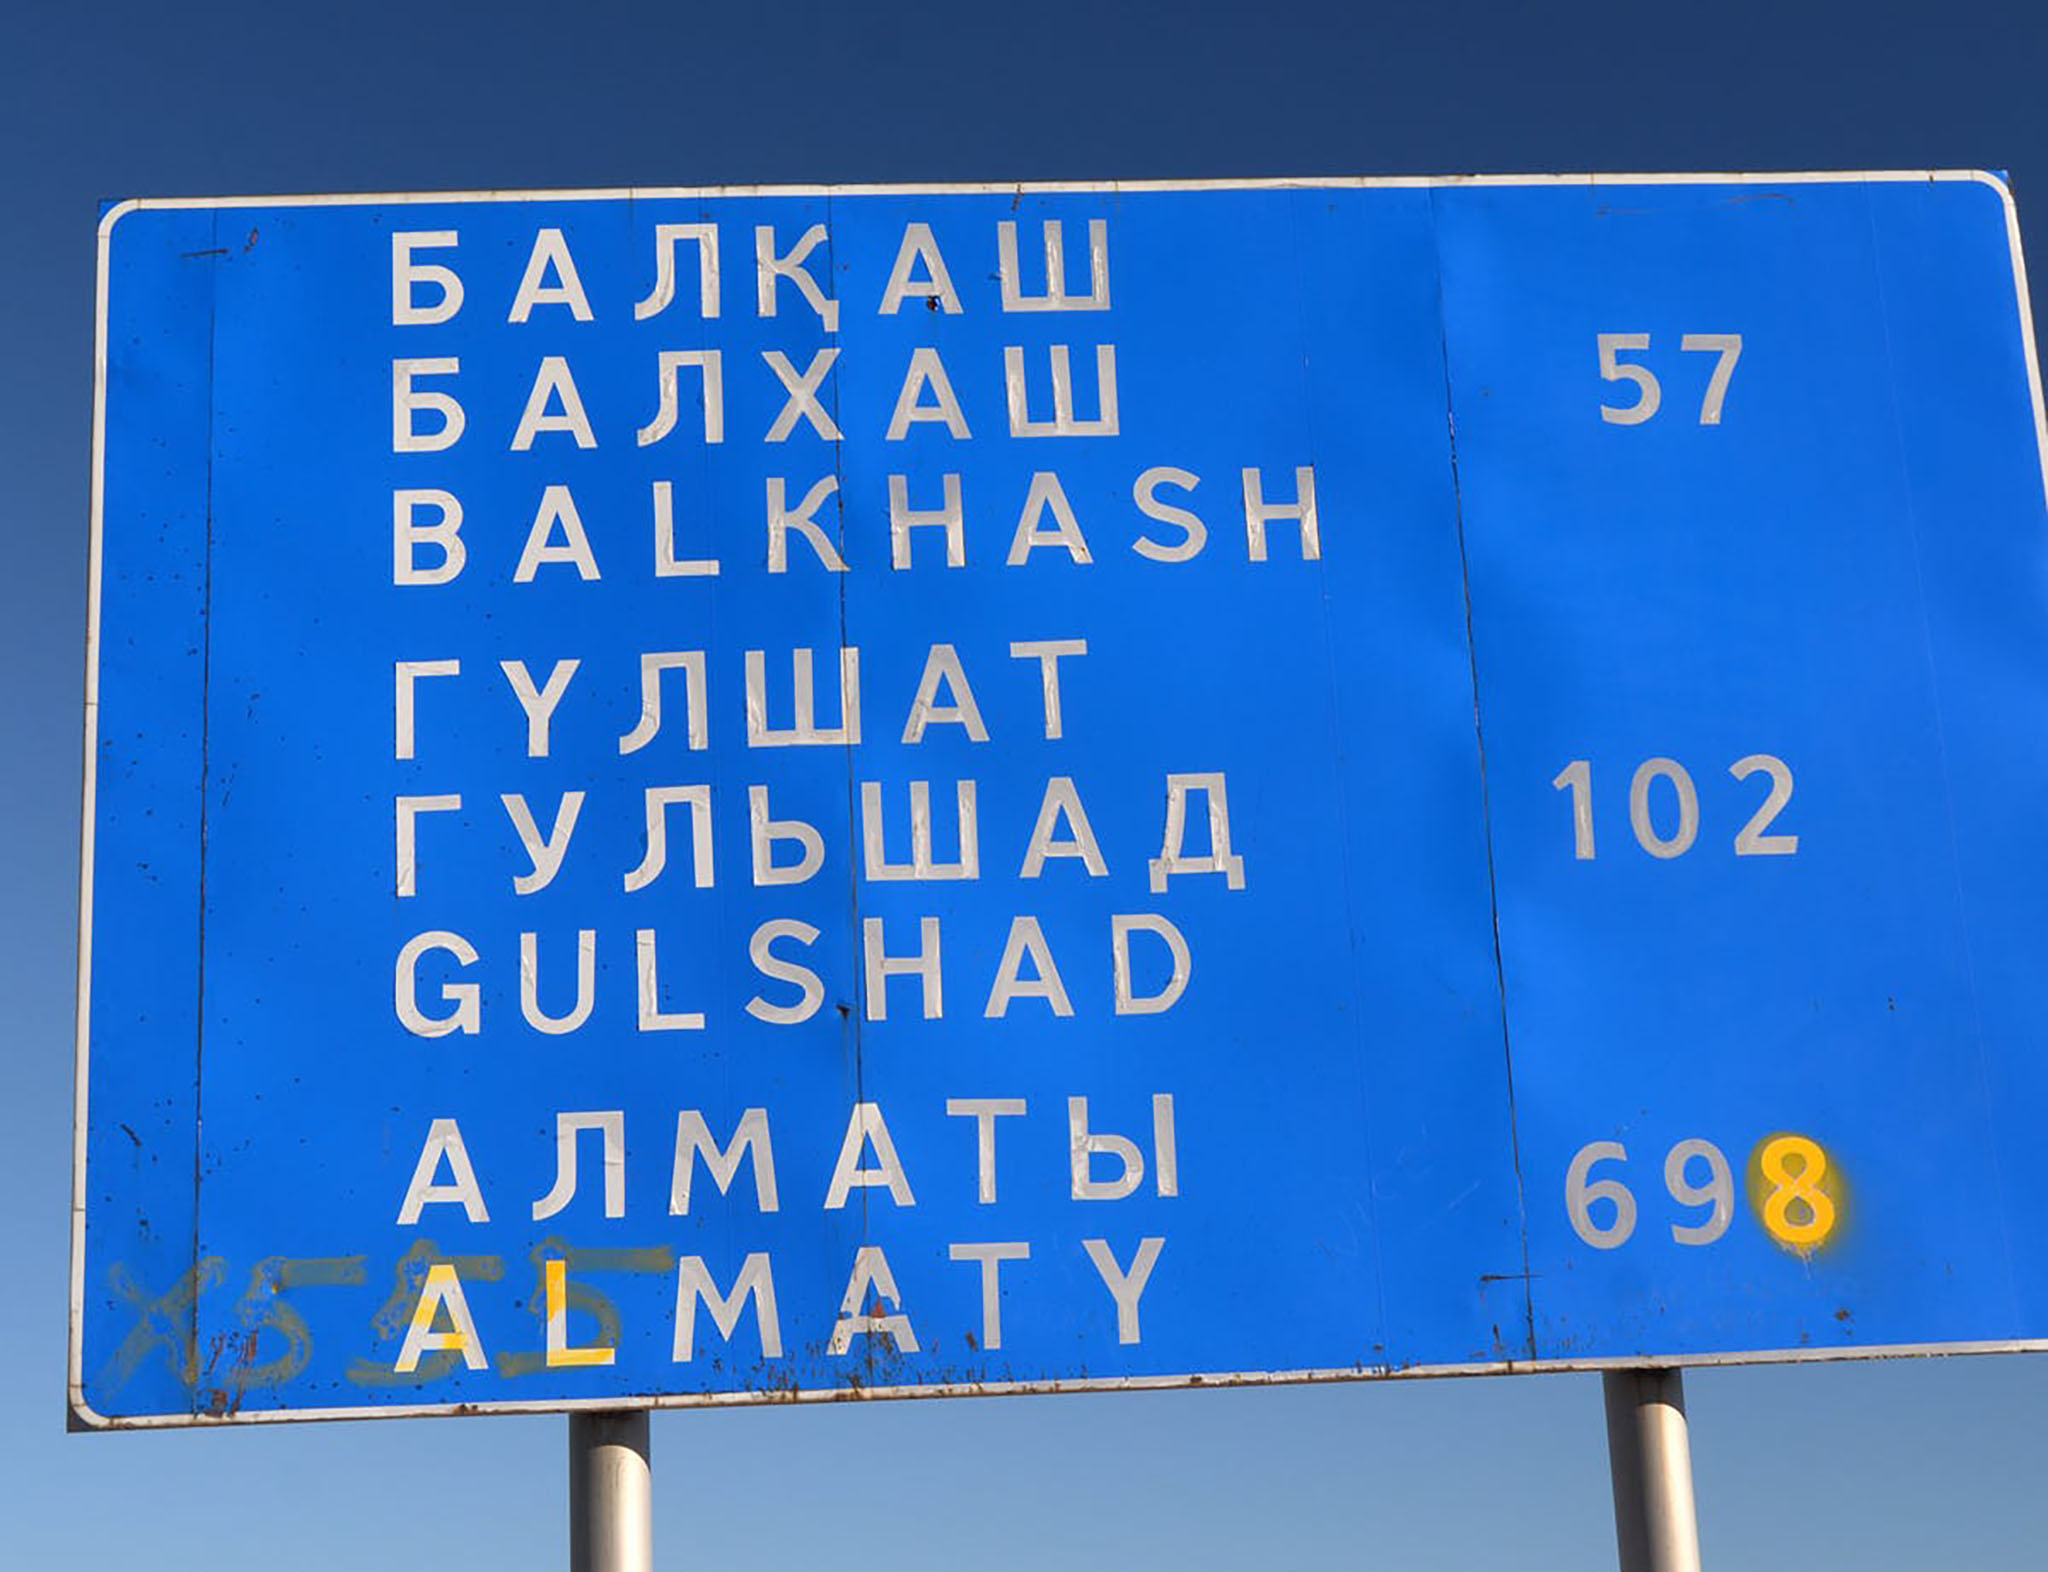 Kazakhstan_language_1.jpg